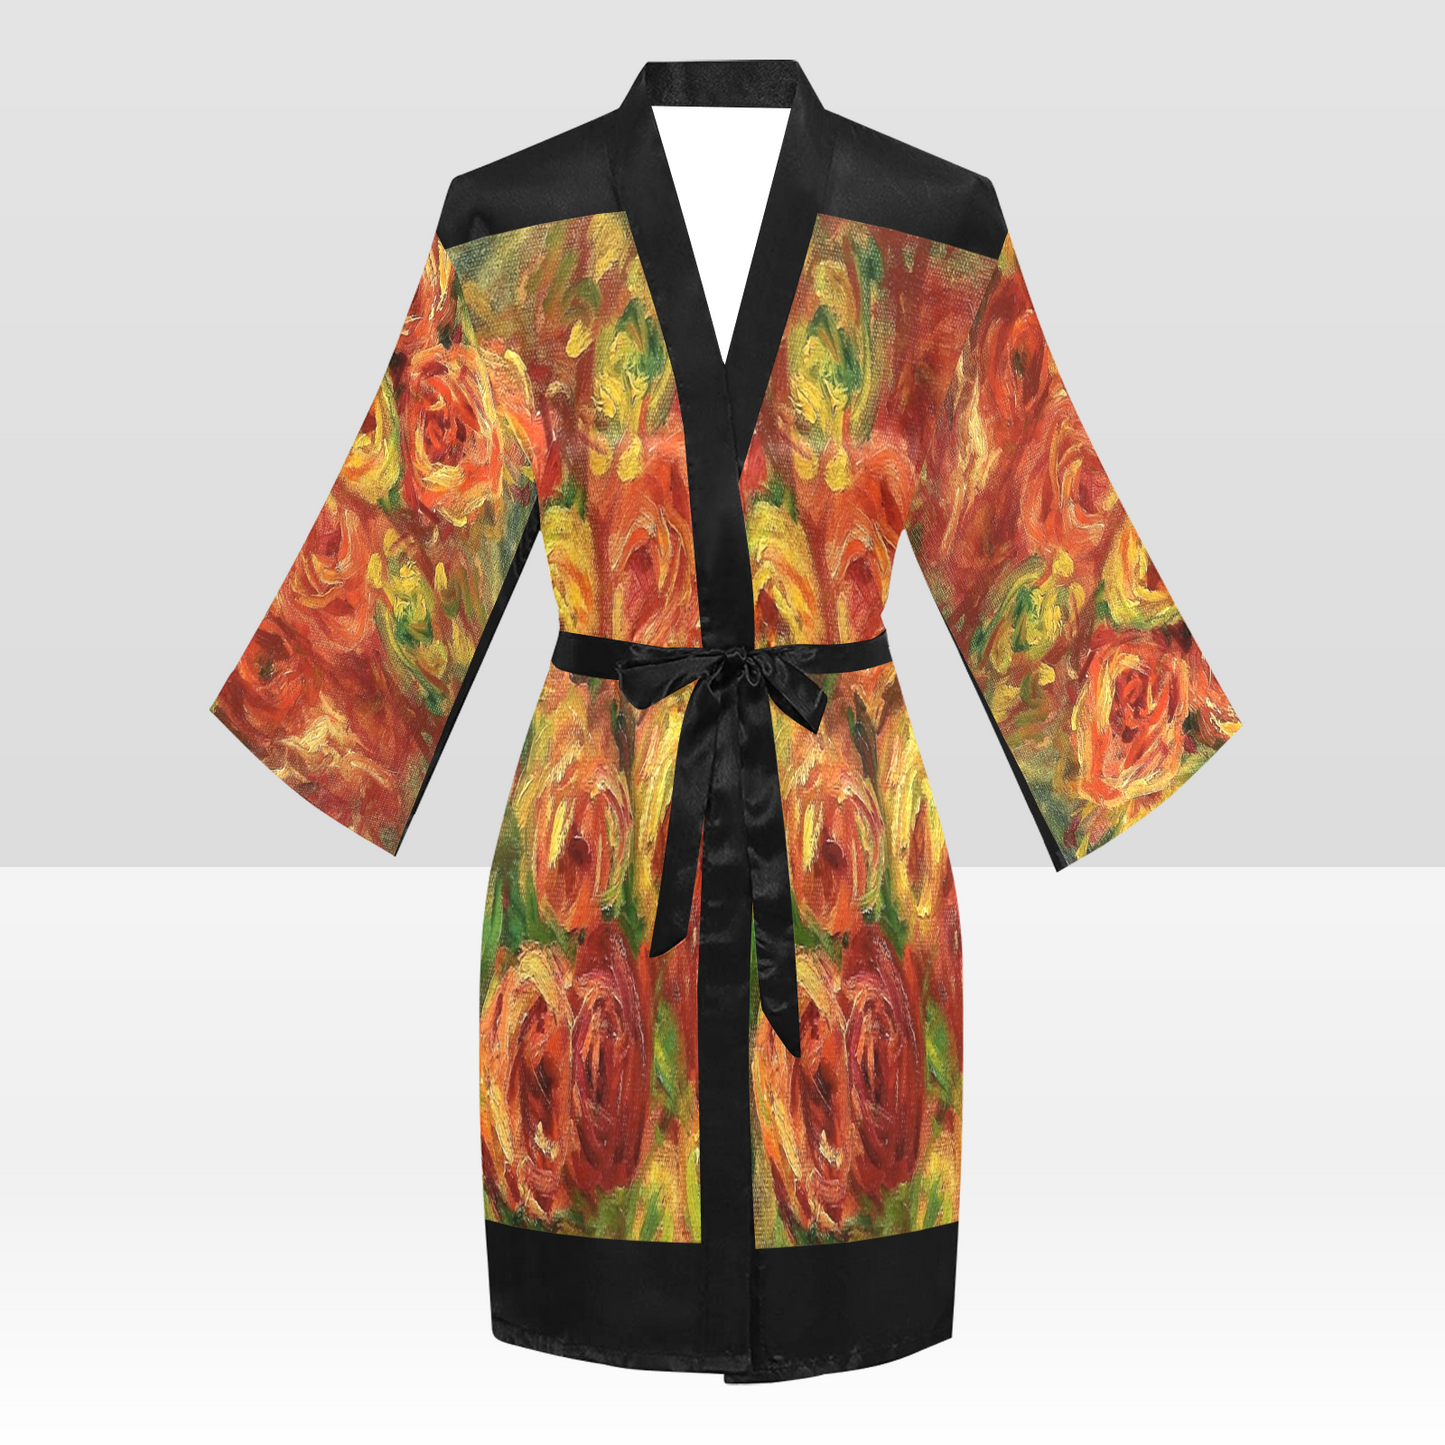 Vintage Floral Kimono Robe, Black or White Trim, Sizes XS to 2XL, Design 18